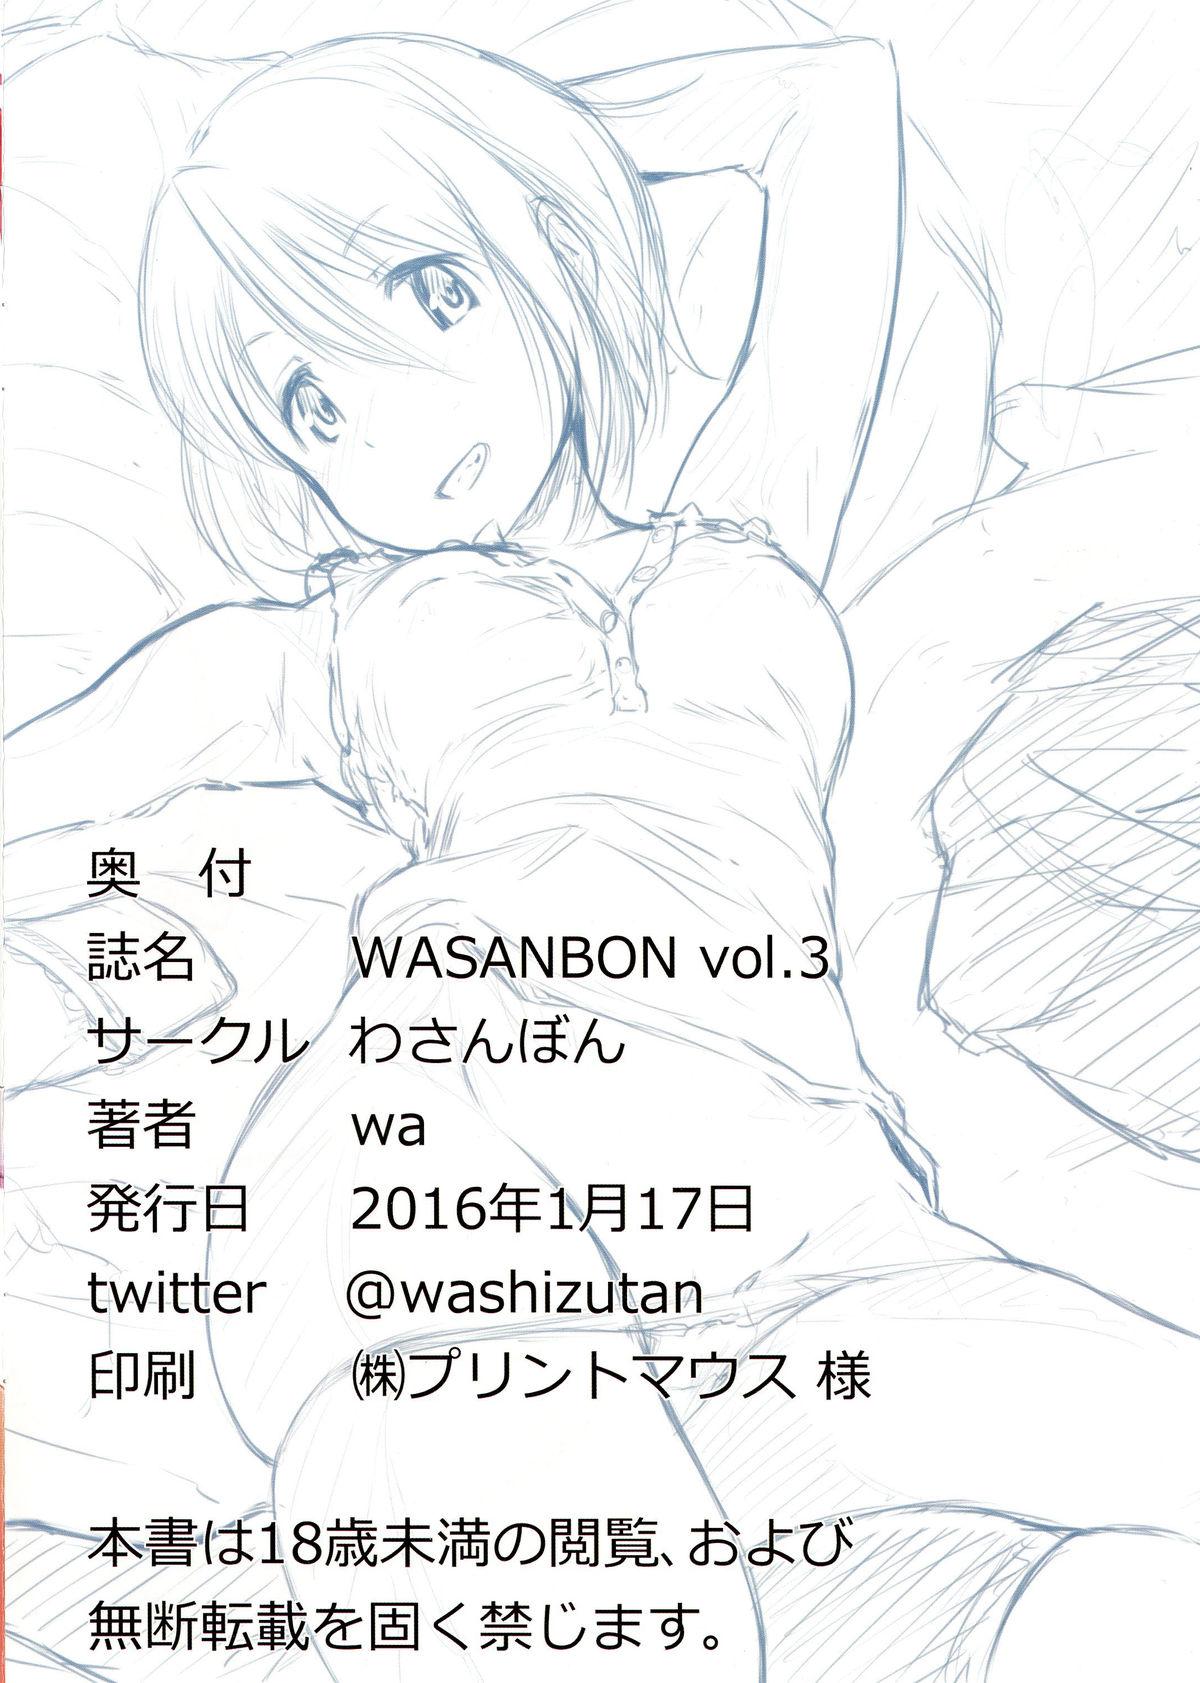 WASANBON vol. 3 13